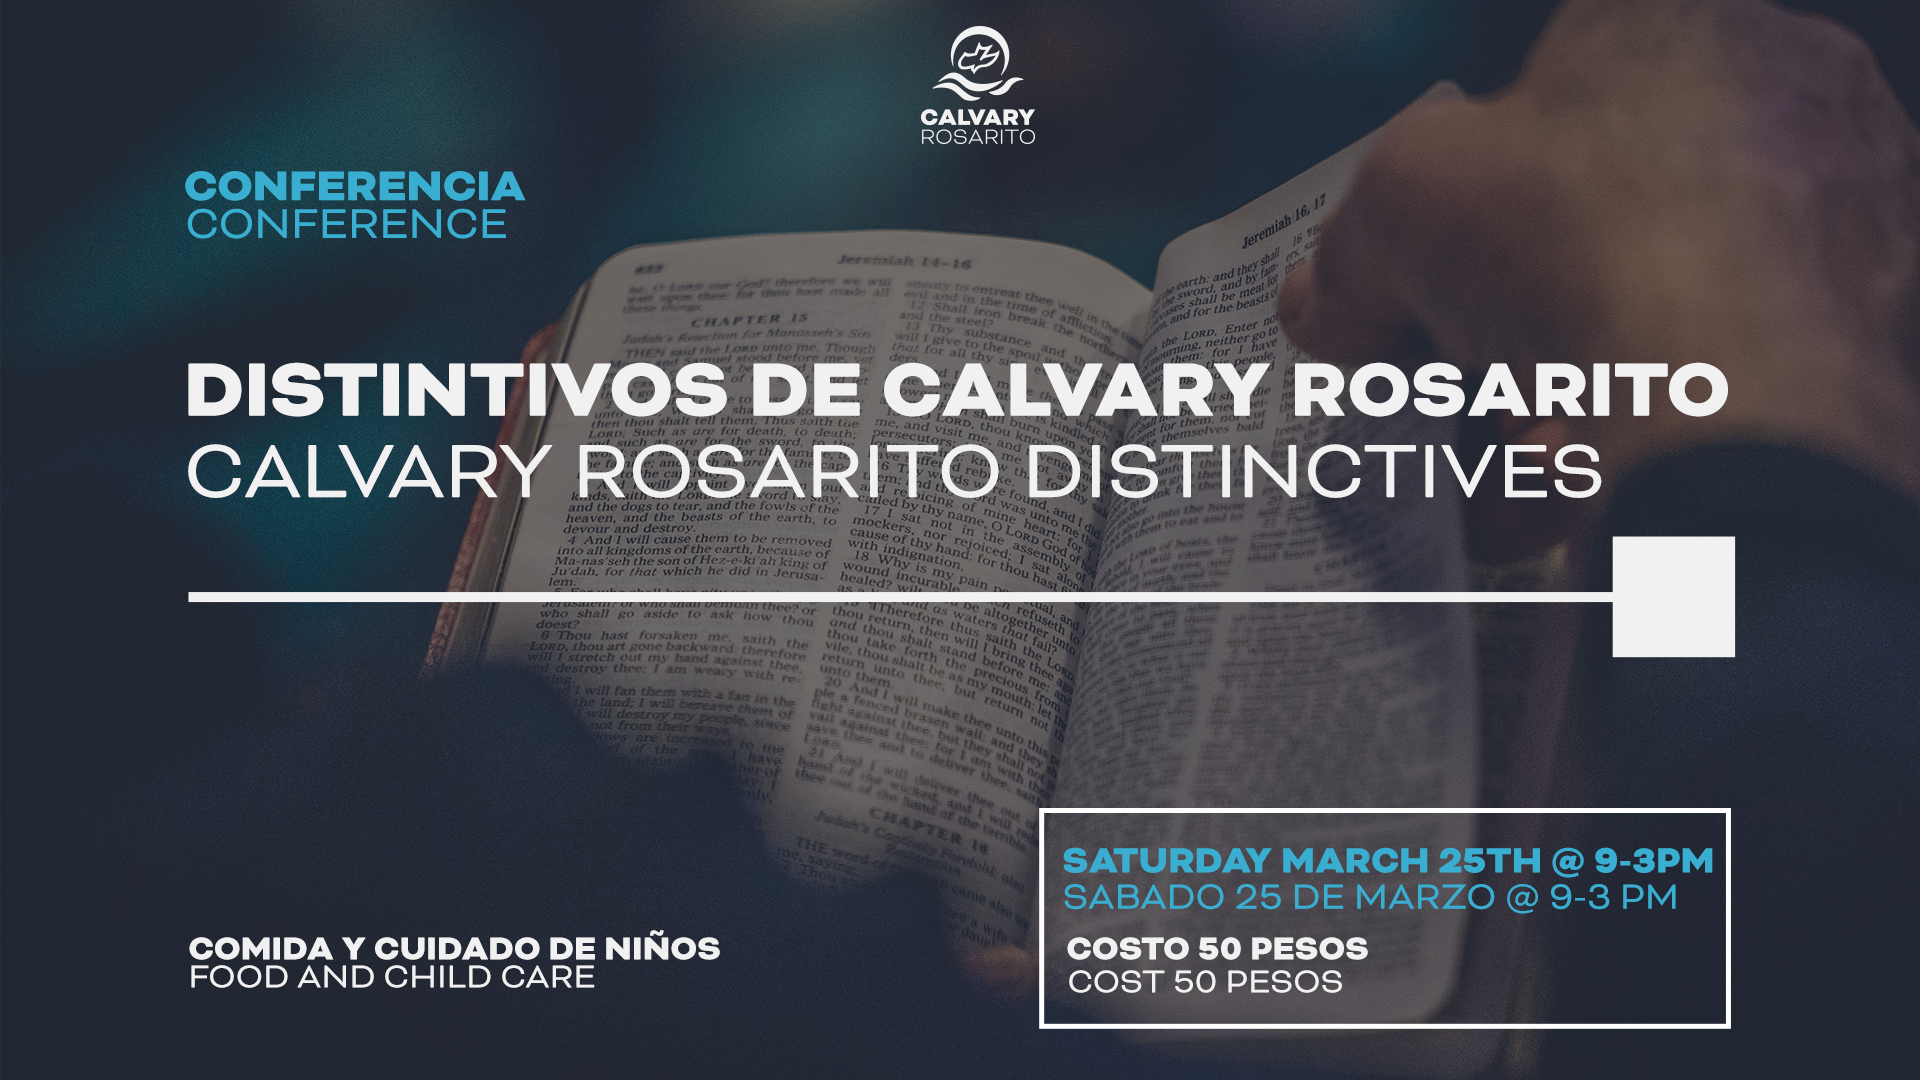 Calvary Rosarito Distinctives Conference – Conferencia de Distintivos Calvary Rosarito